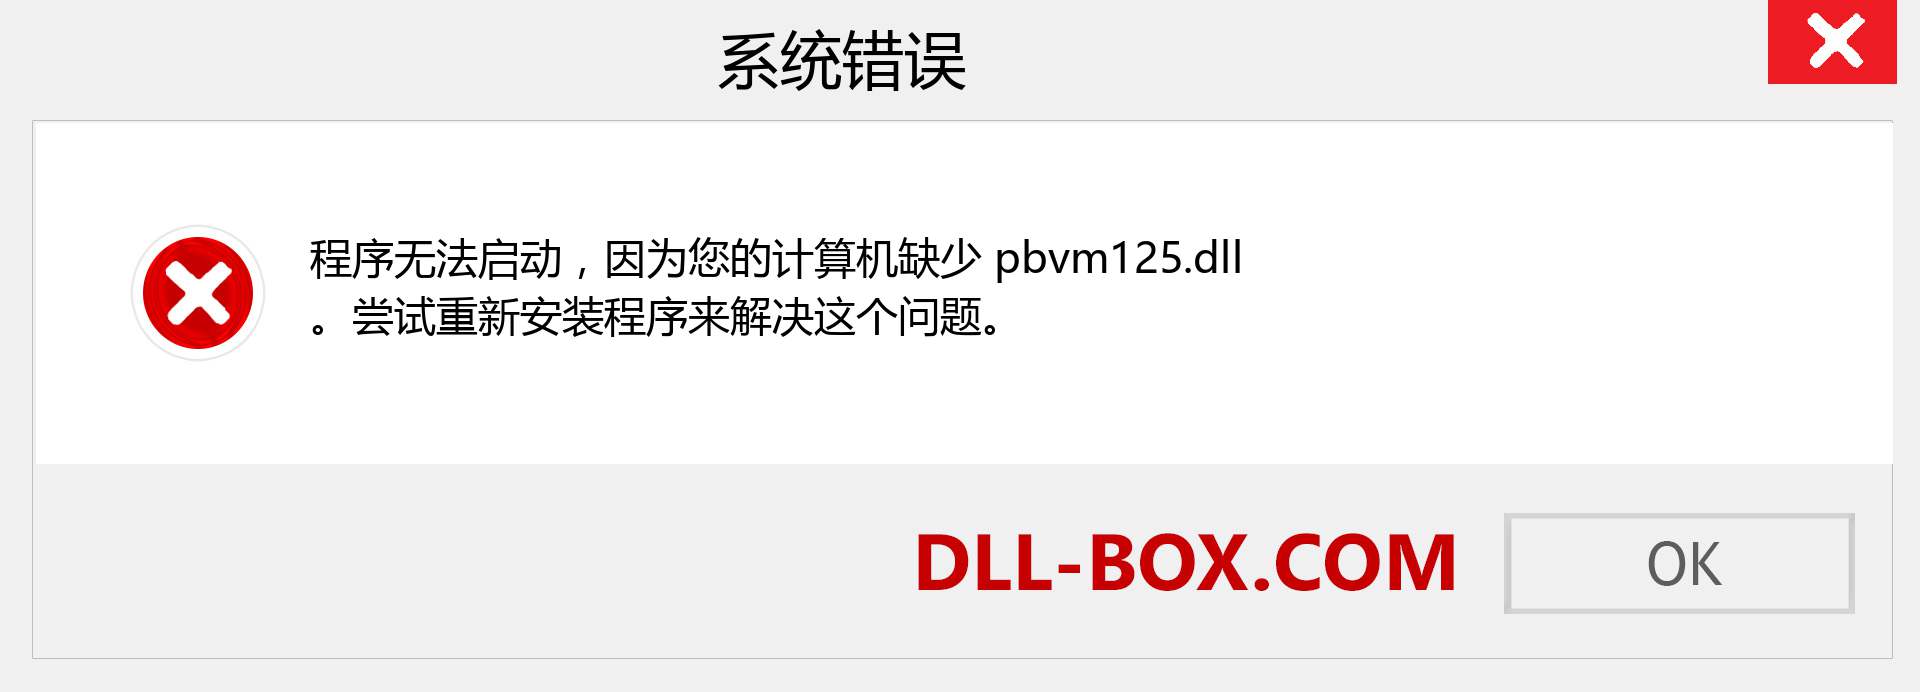 pbvm125.dll 文件丢失？。 适用于 Windows 7、8、10 的下载 - 修复 Windows、照片、图像上的 pbvm125 dll 丢失错误